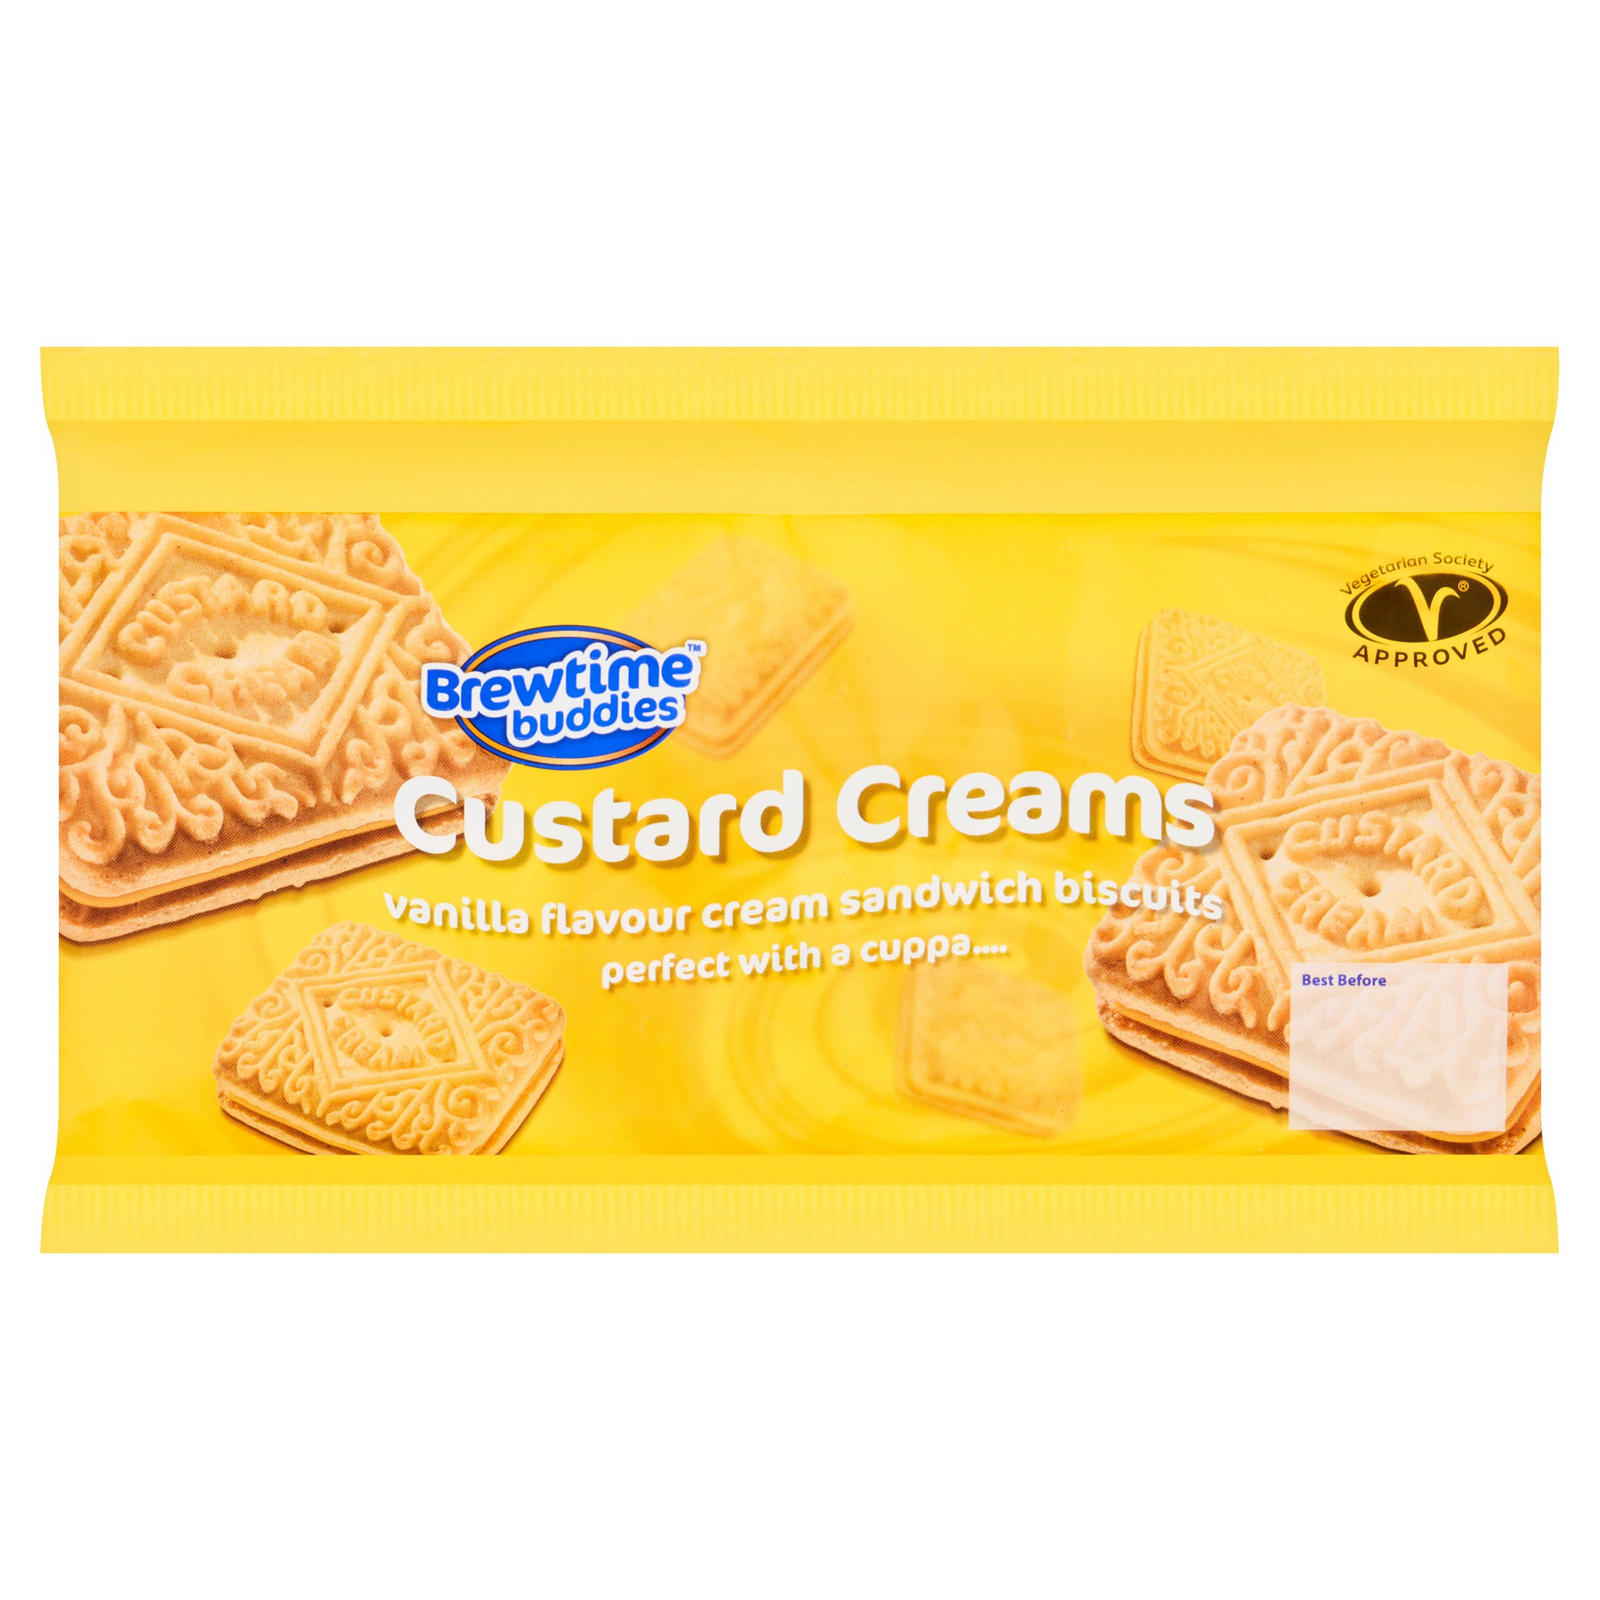 Brewtime Buddies Custard Creams Vanilla Flavour Cream Sandwich Biscuits 300g